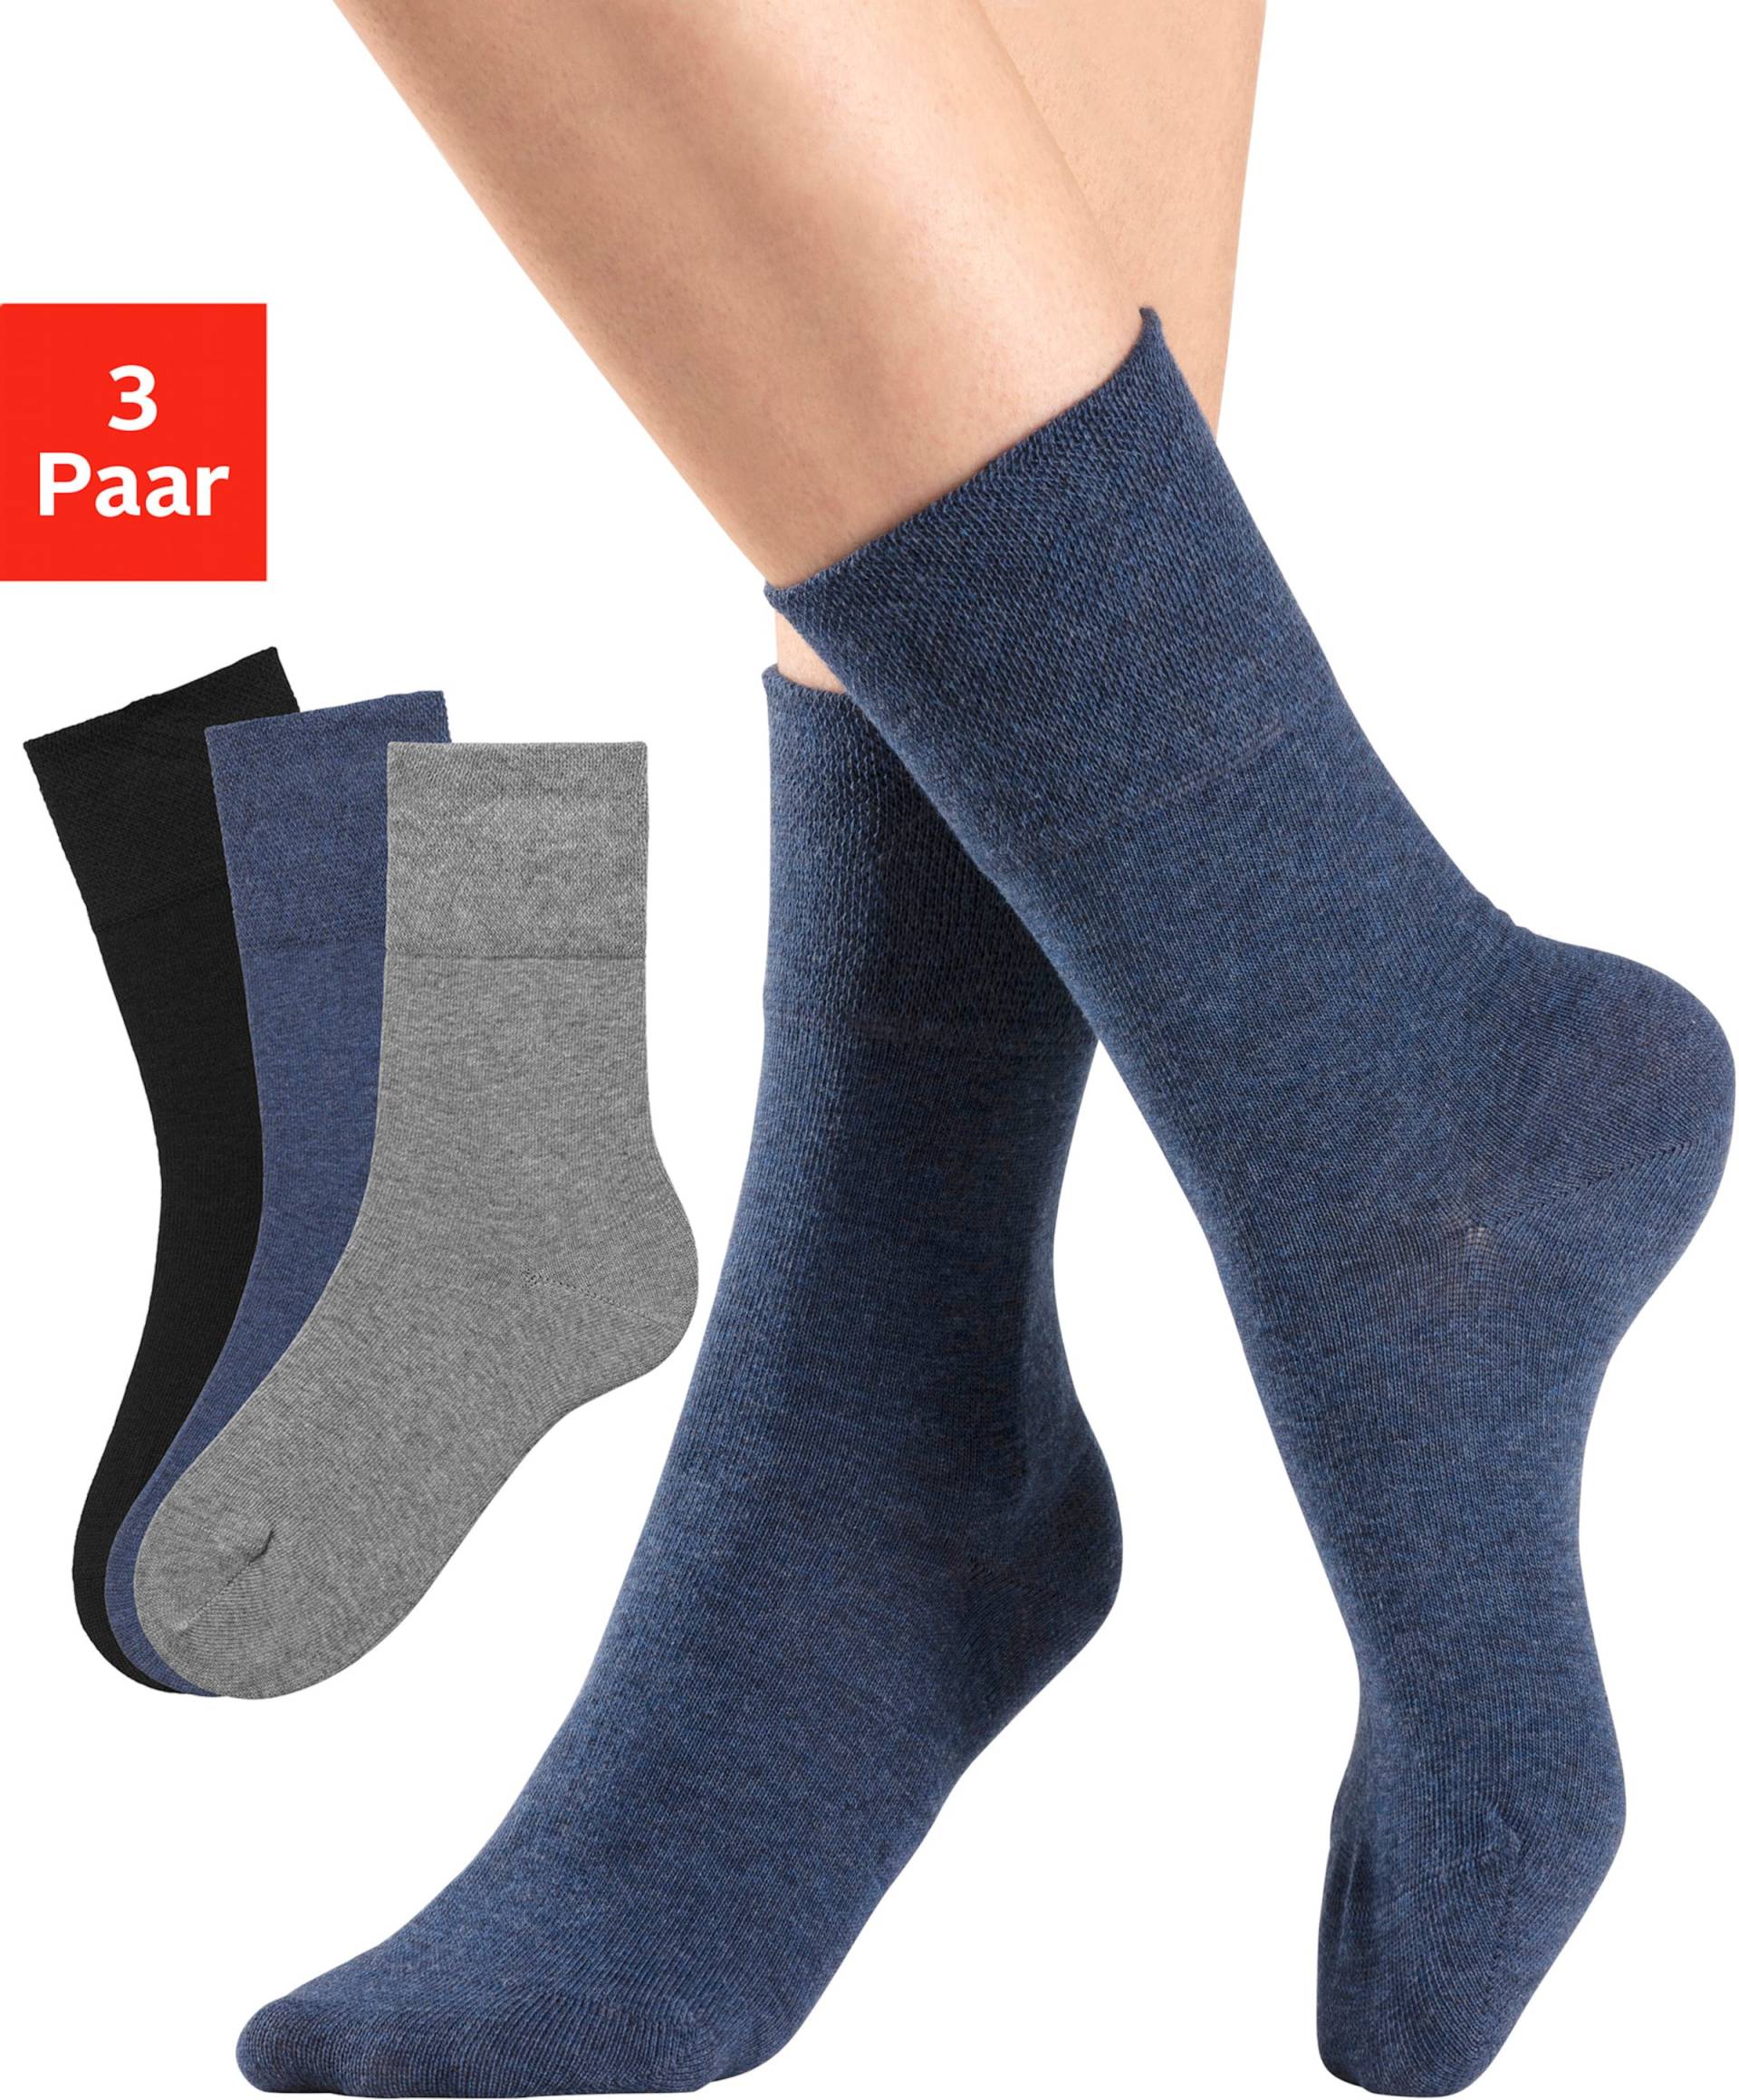 Socken in 1x jeans, 1x schwarz, 1x grau-meliert von H.I.S